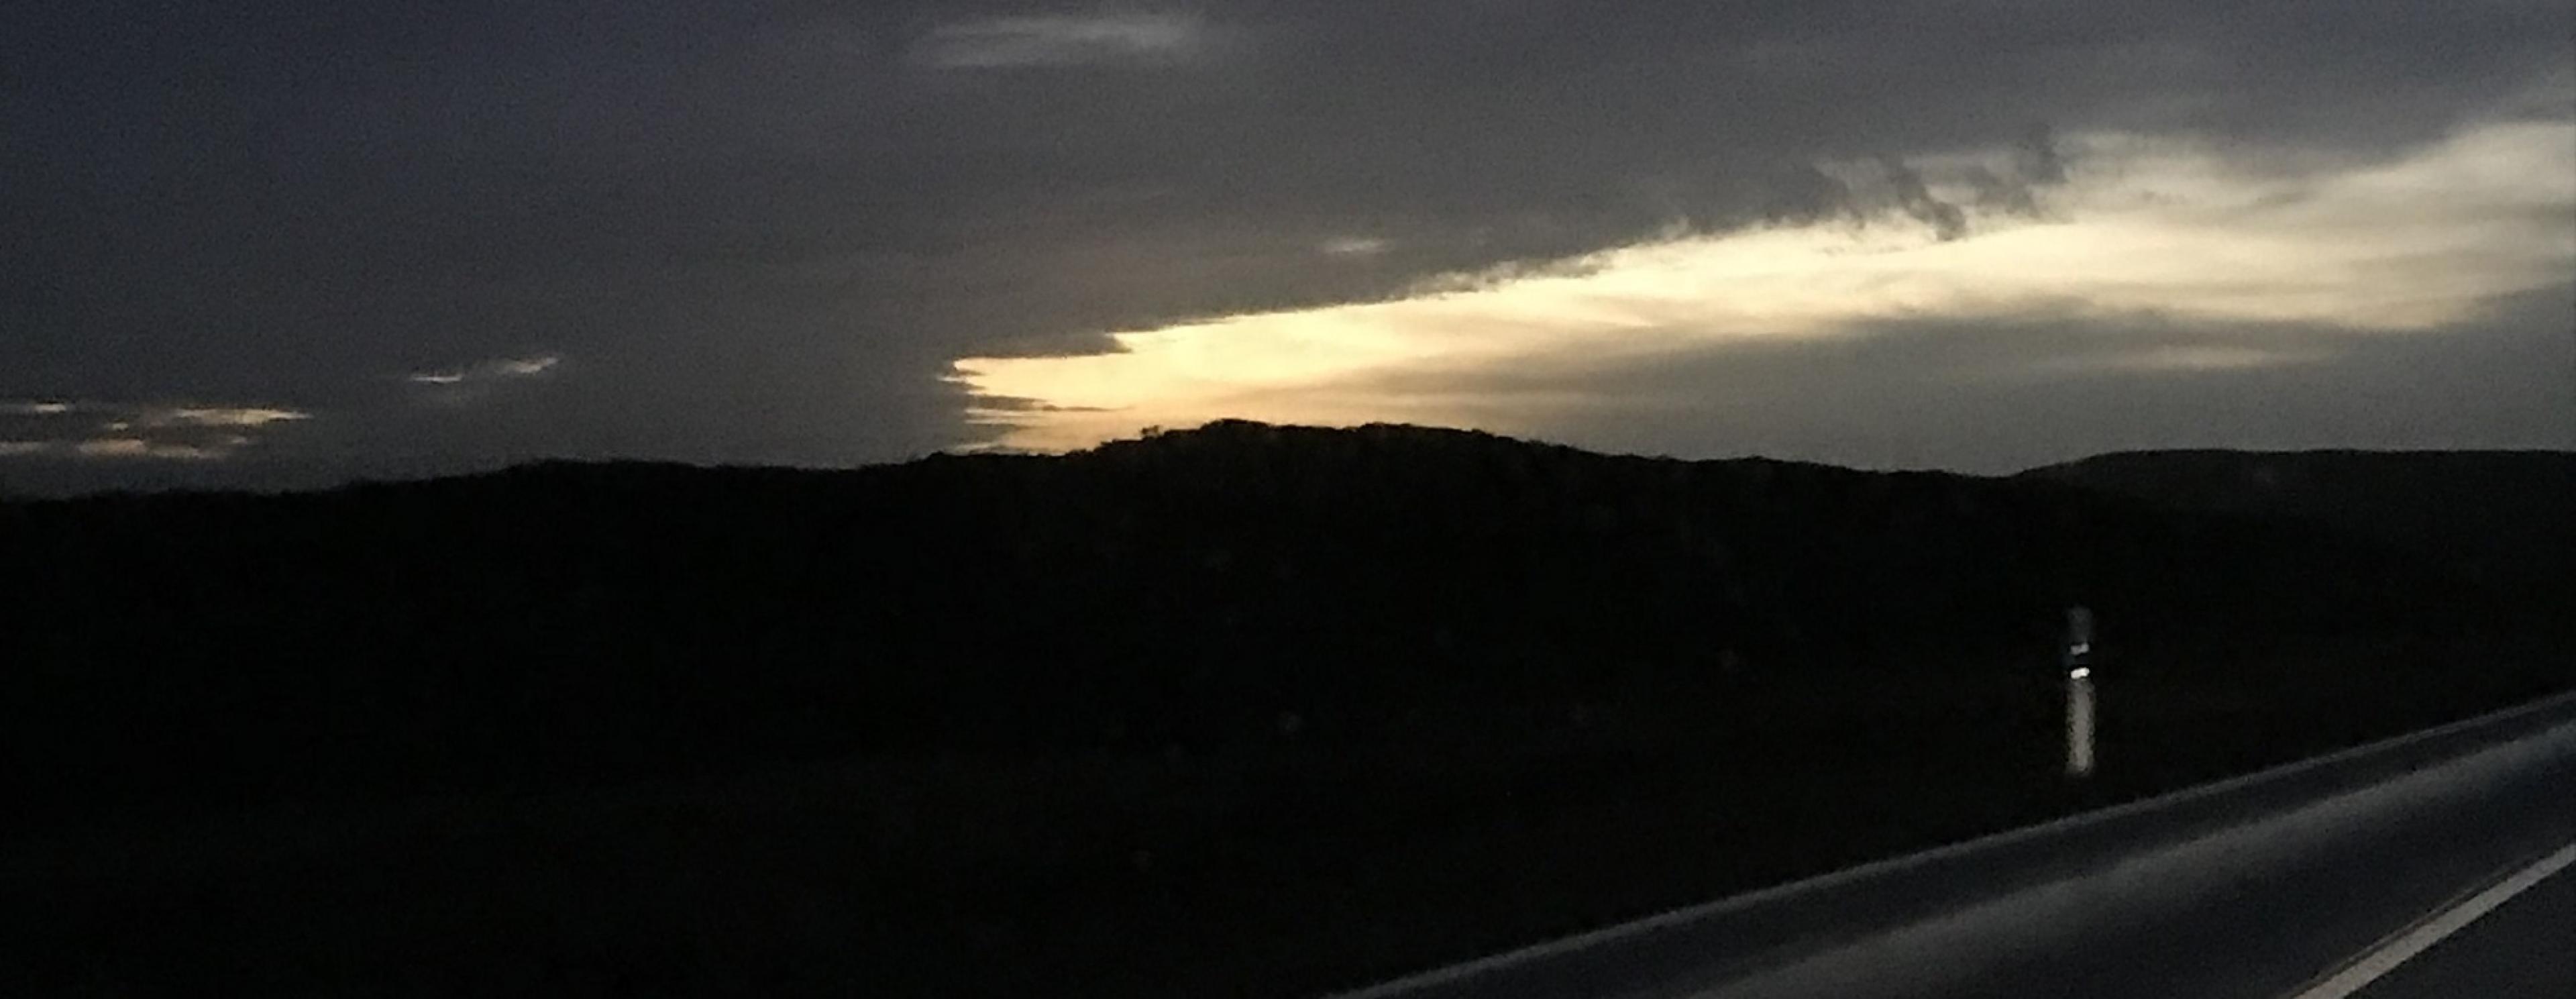 Sonnenaufgang hinter einer sehr dunklen Wolke, betrachtet aus einem Auto, das auf einer Landstraße fährt.